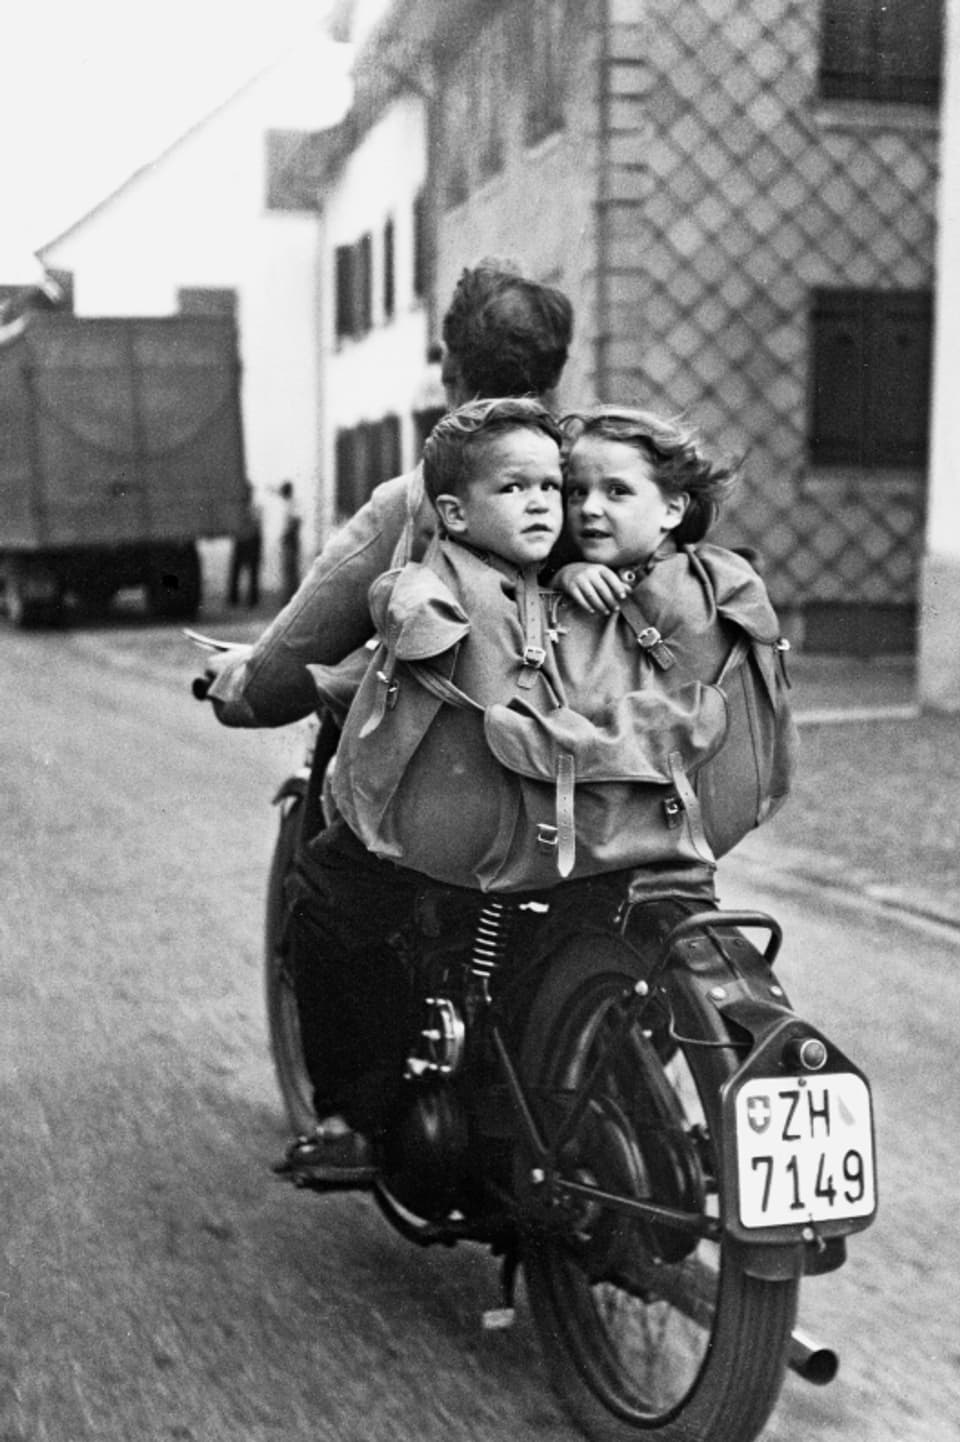 Schwarz-Weiss-Bild: Ein Mann auf einem Motorrad, auf dem Gepäckträger eine Tasche, in der ein Knabe und ein Mädchen sitzen.